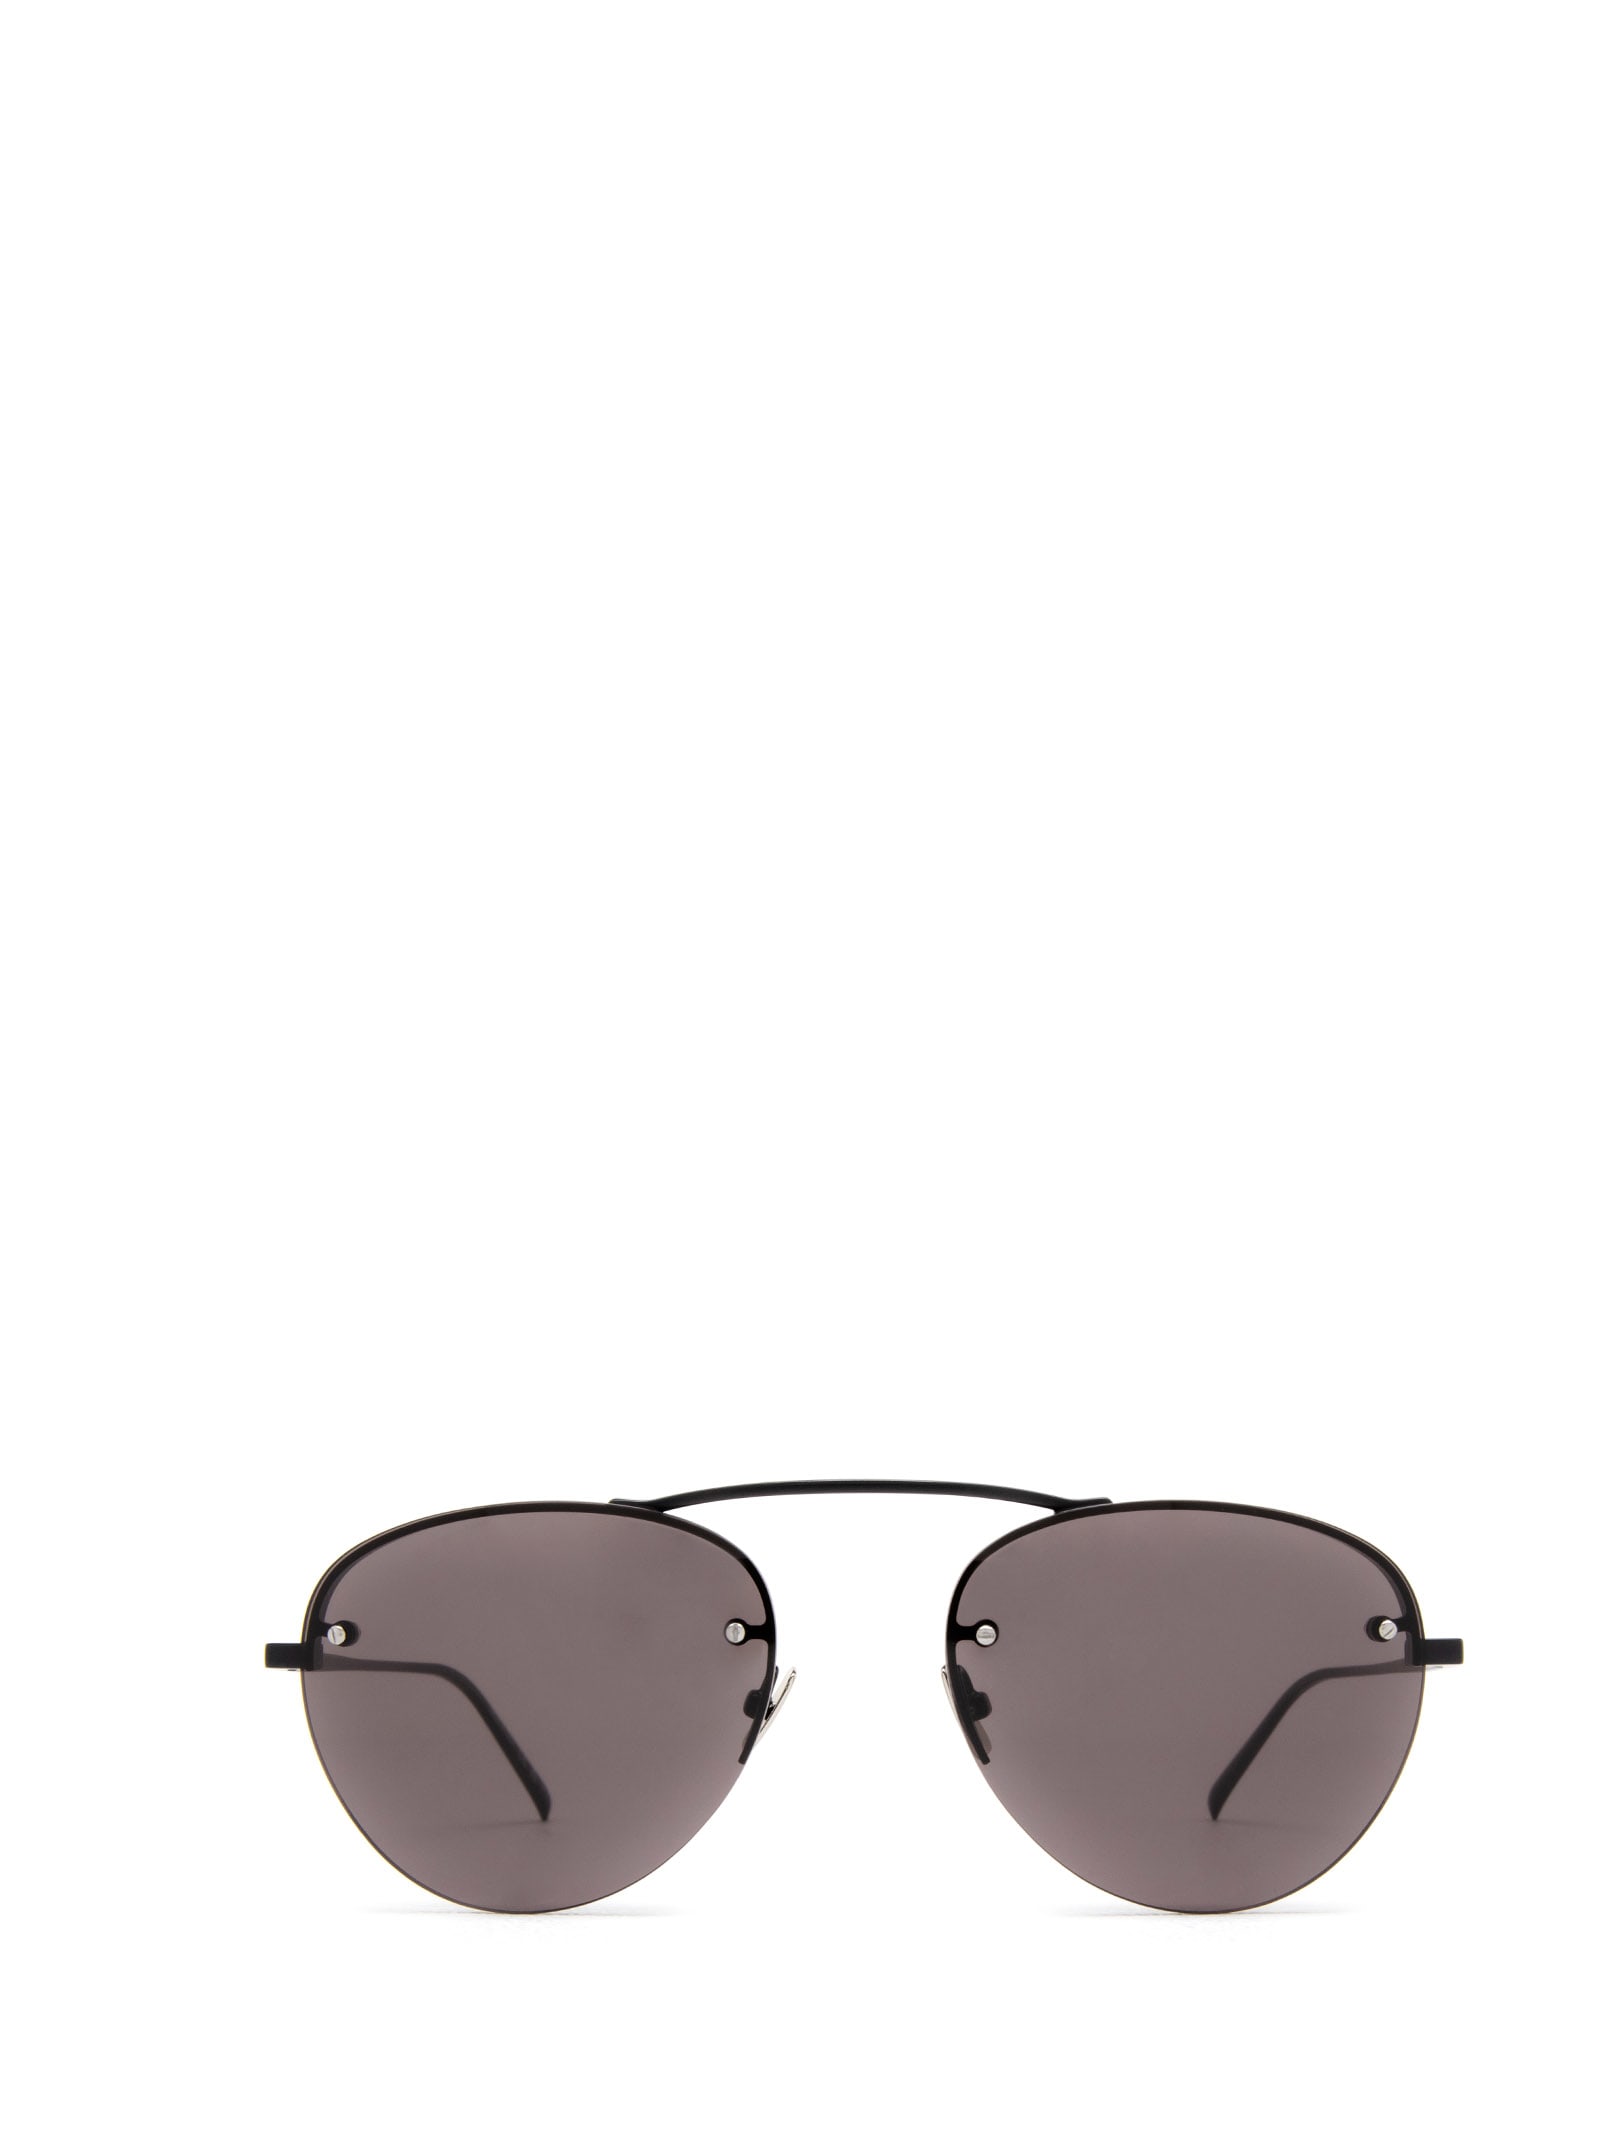 SL 575 Aviator Sunglasses in Black - Saint Laurent